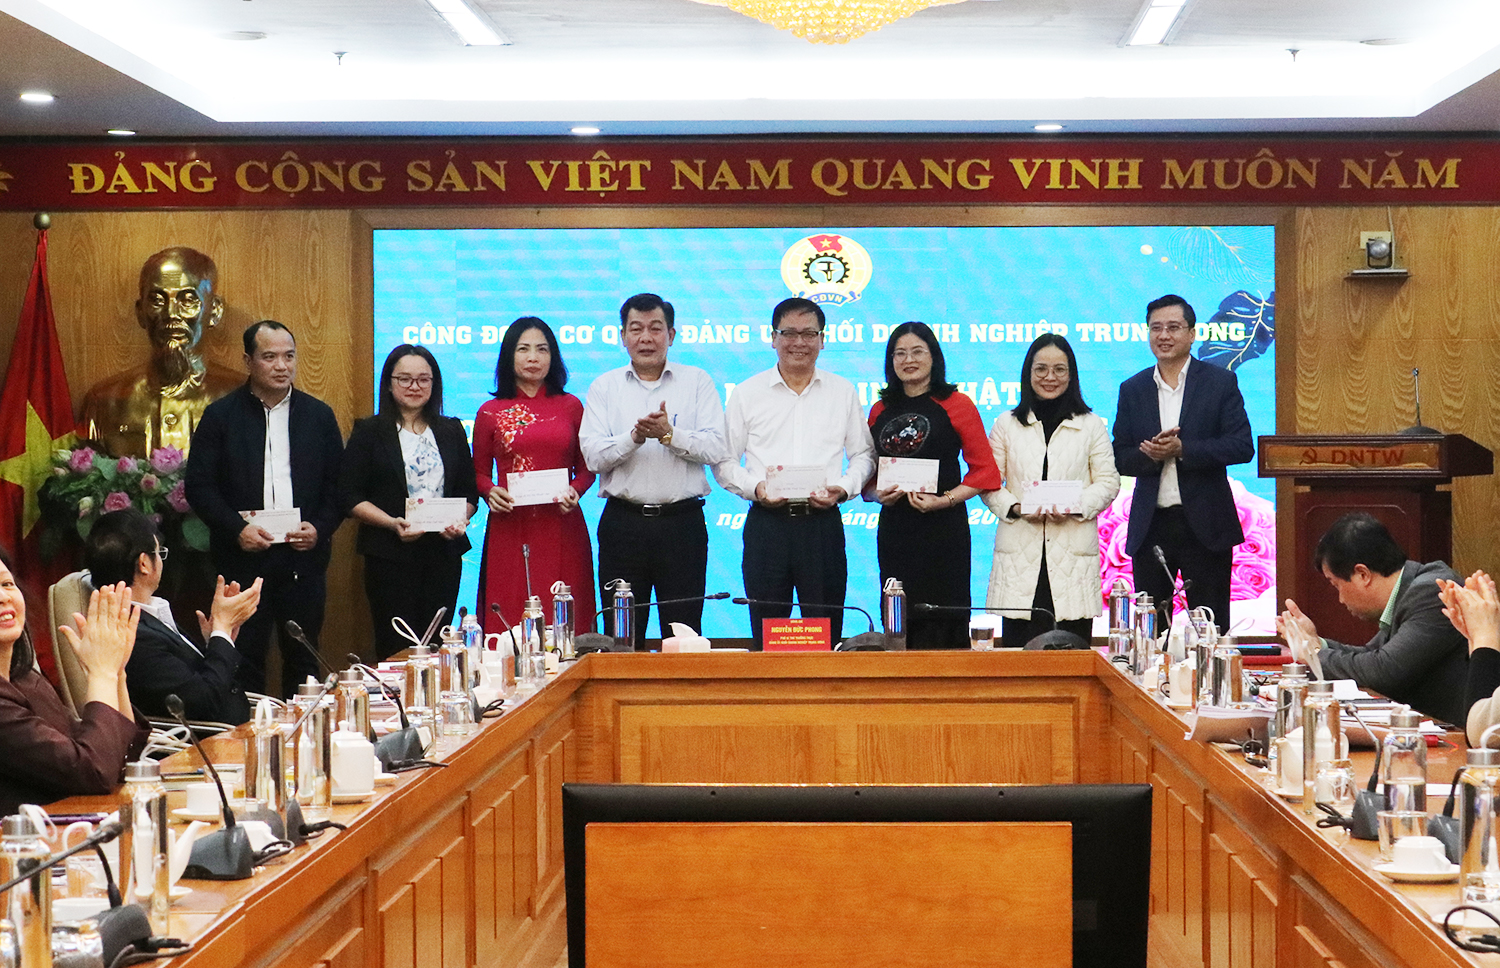 Đồng chí Nguyễn Đức Phong, Phó Bí thư Thường trực Đảng uỷ Khối Doanh nghiệp Trung ương phát biểu tại Hội nghị.